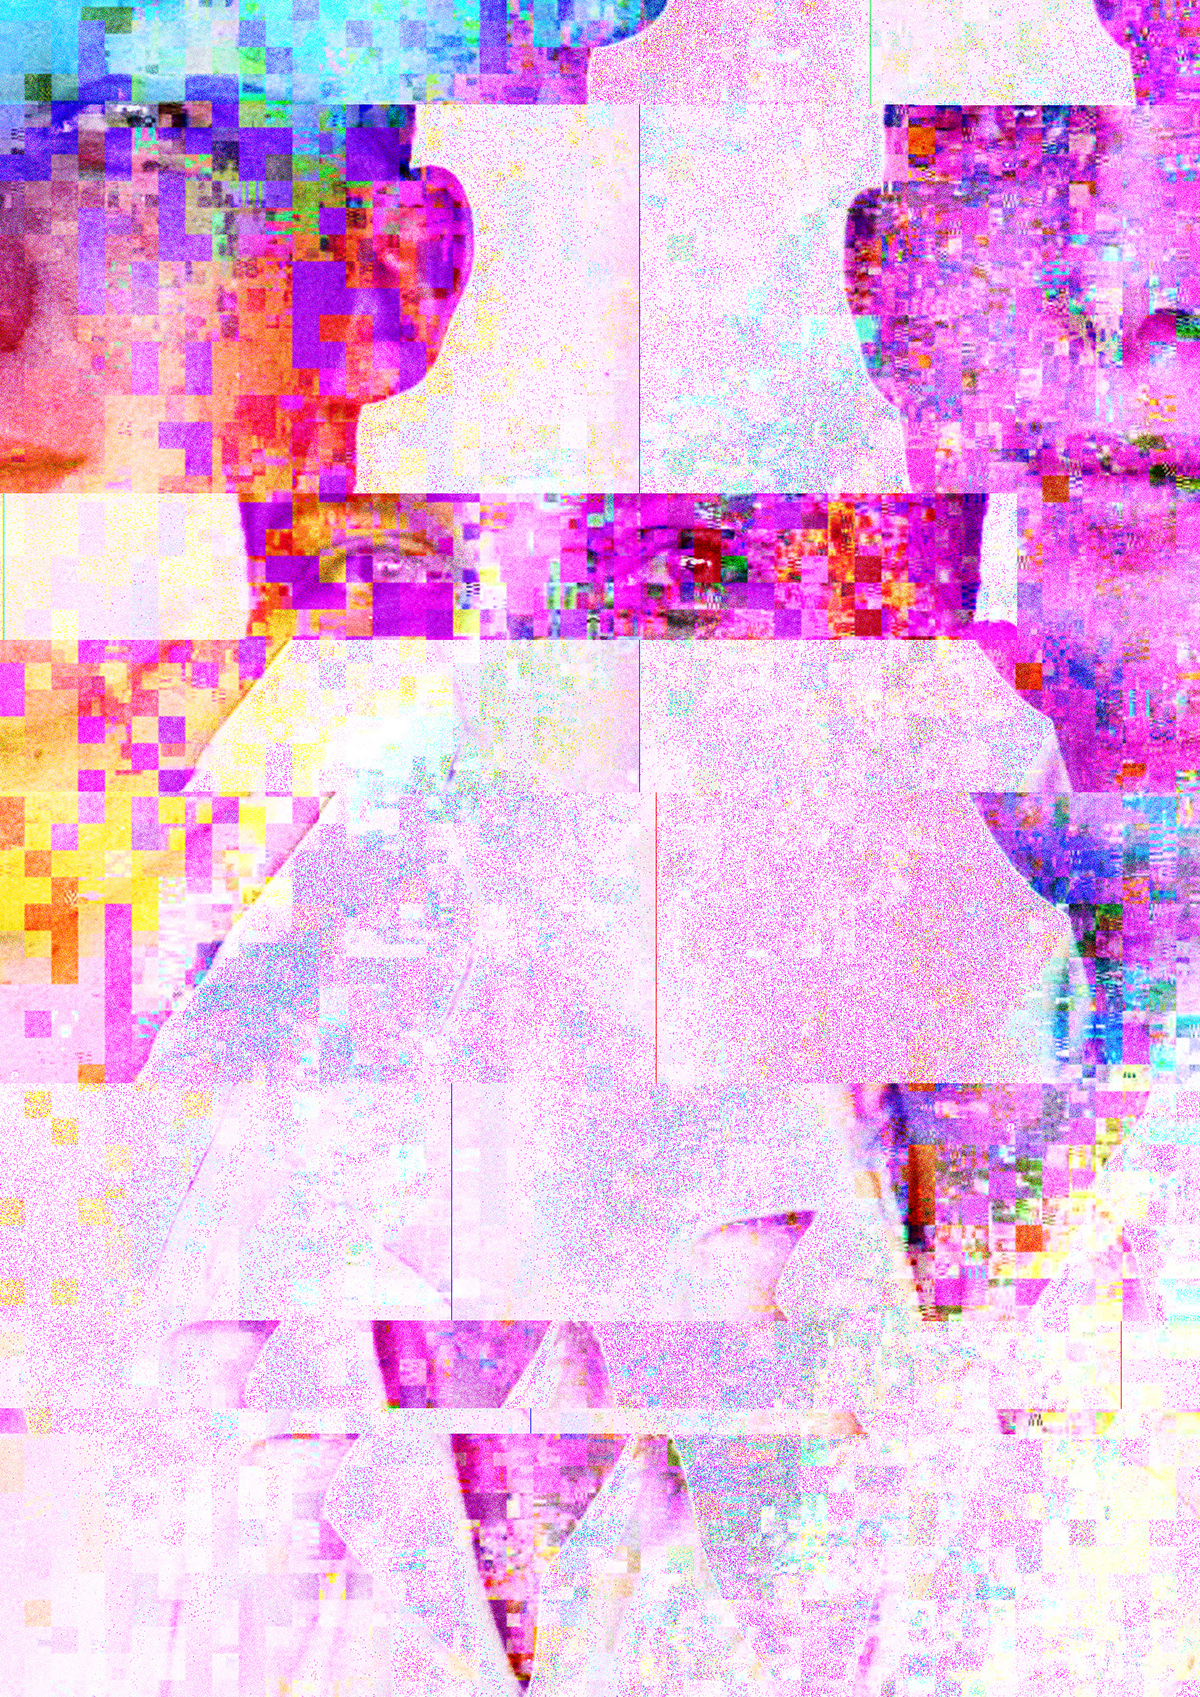 portrait Glitch distort grain Datamosh experiment myles myles walker barry lockhart walker digital manipulation photoshop error ReFormat identity